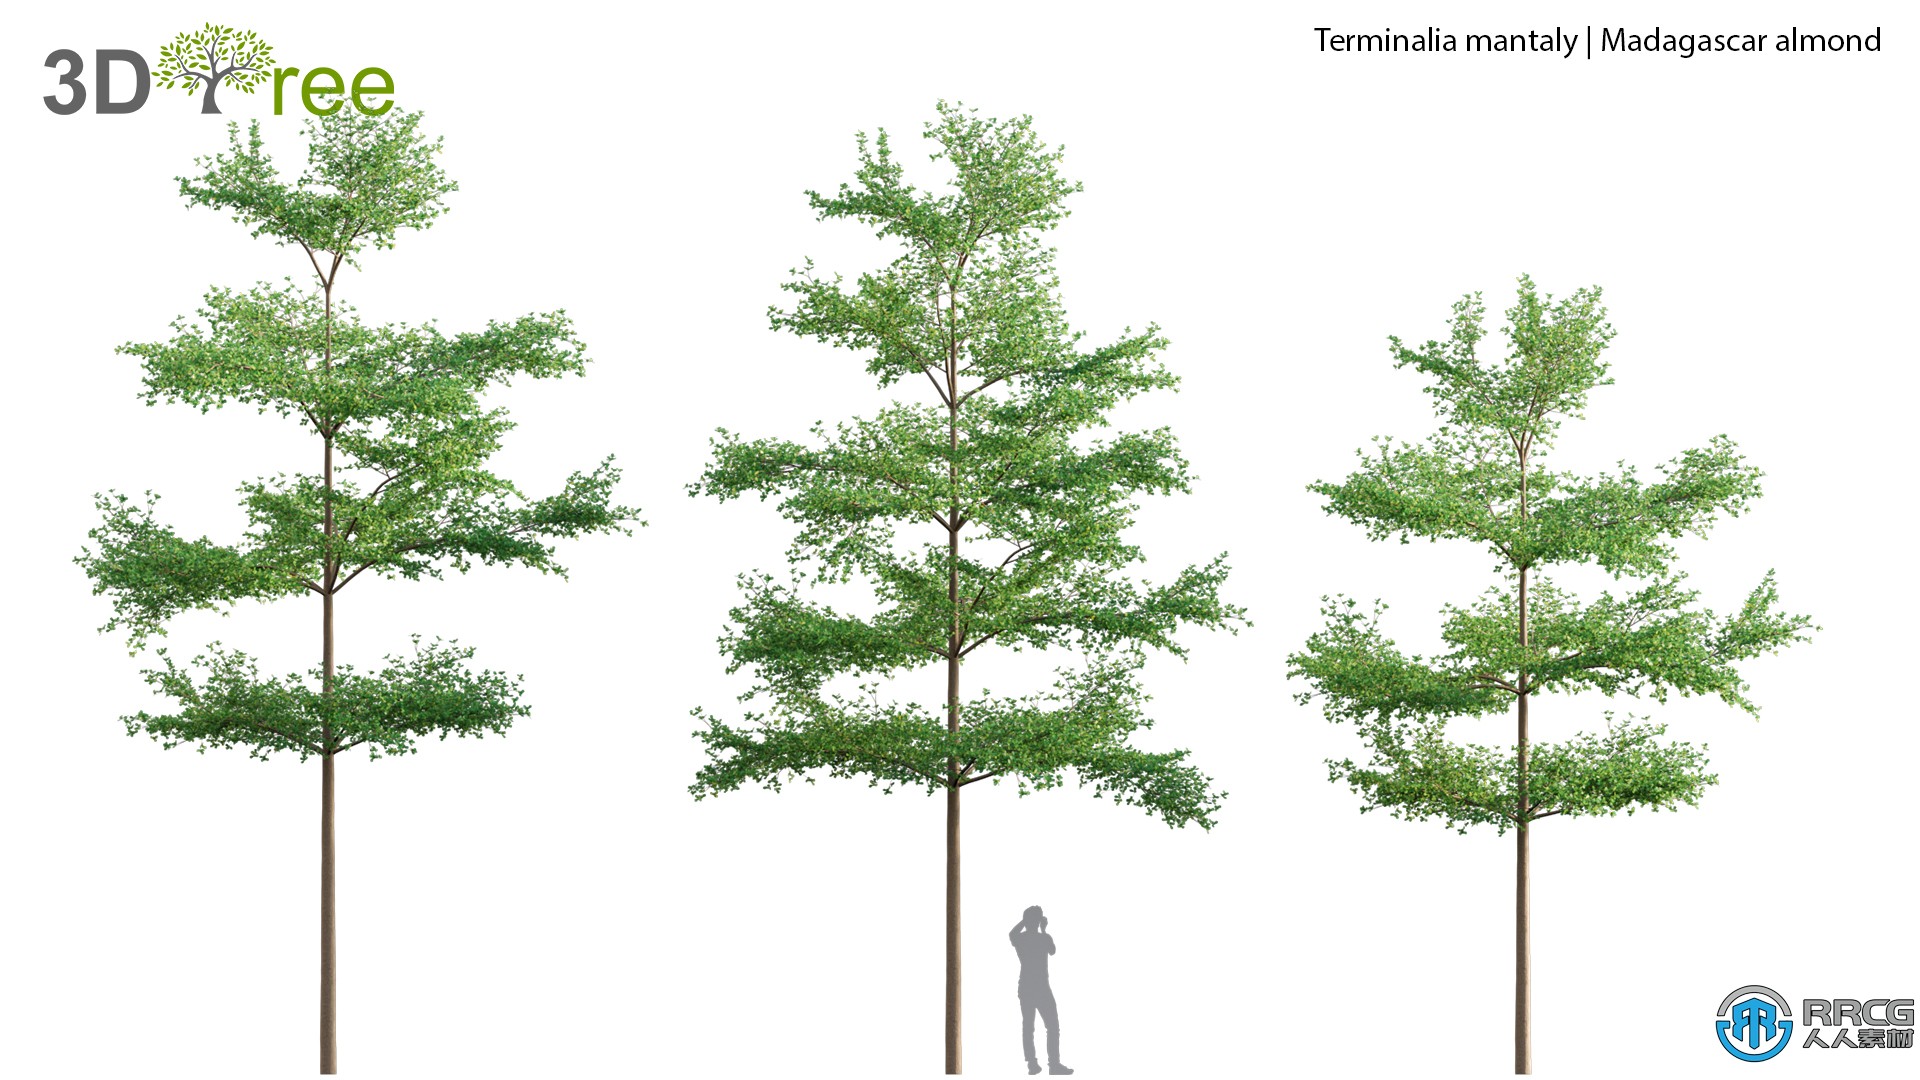 10组榕树决明子木兰花等树木植物高质量3D模型合集